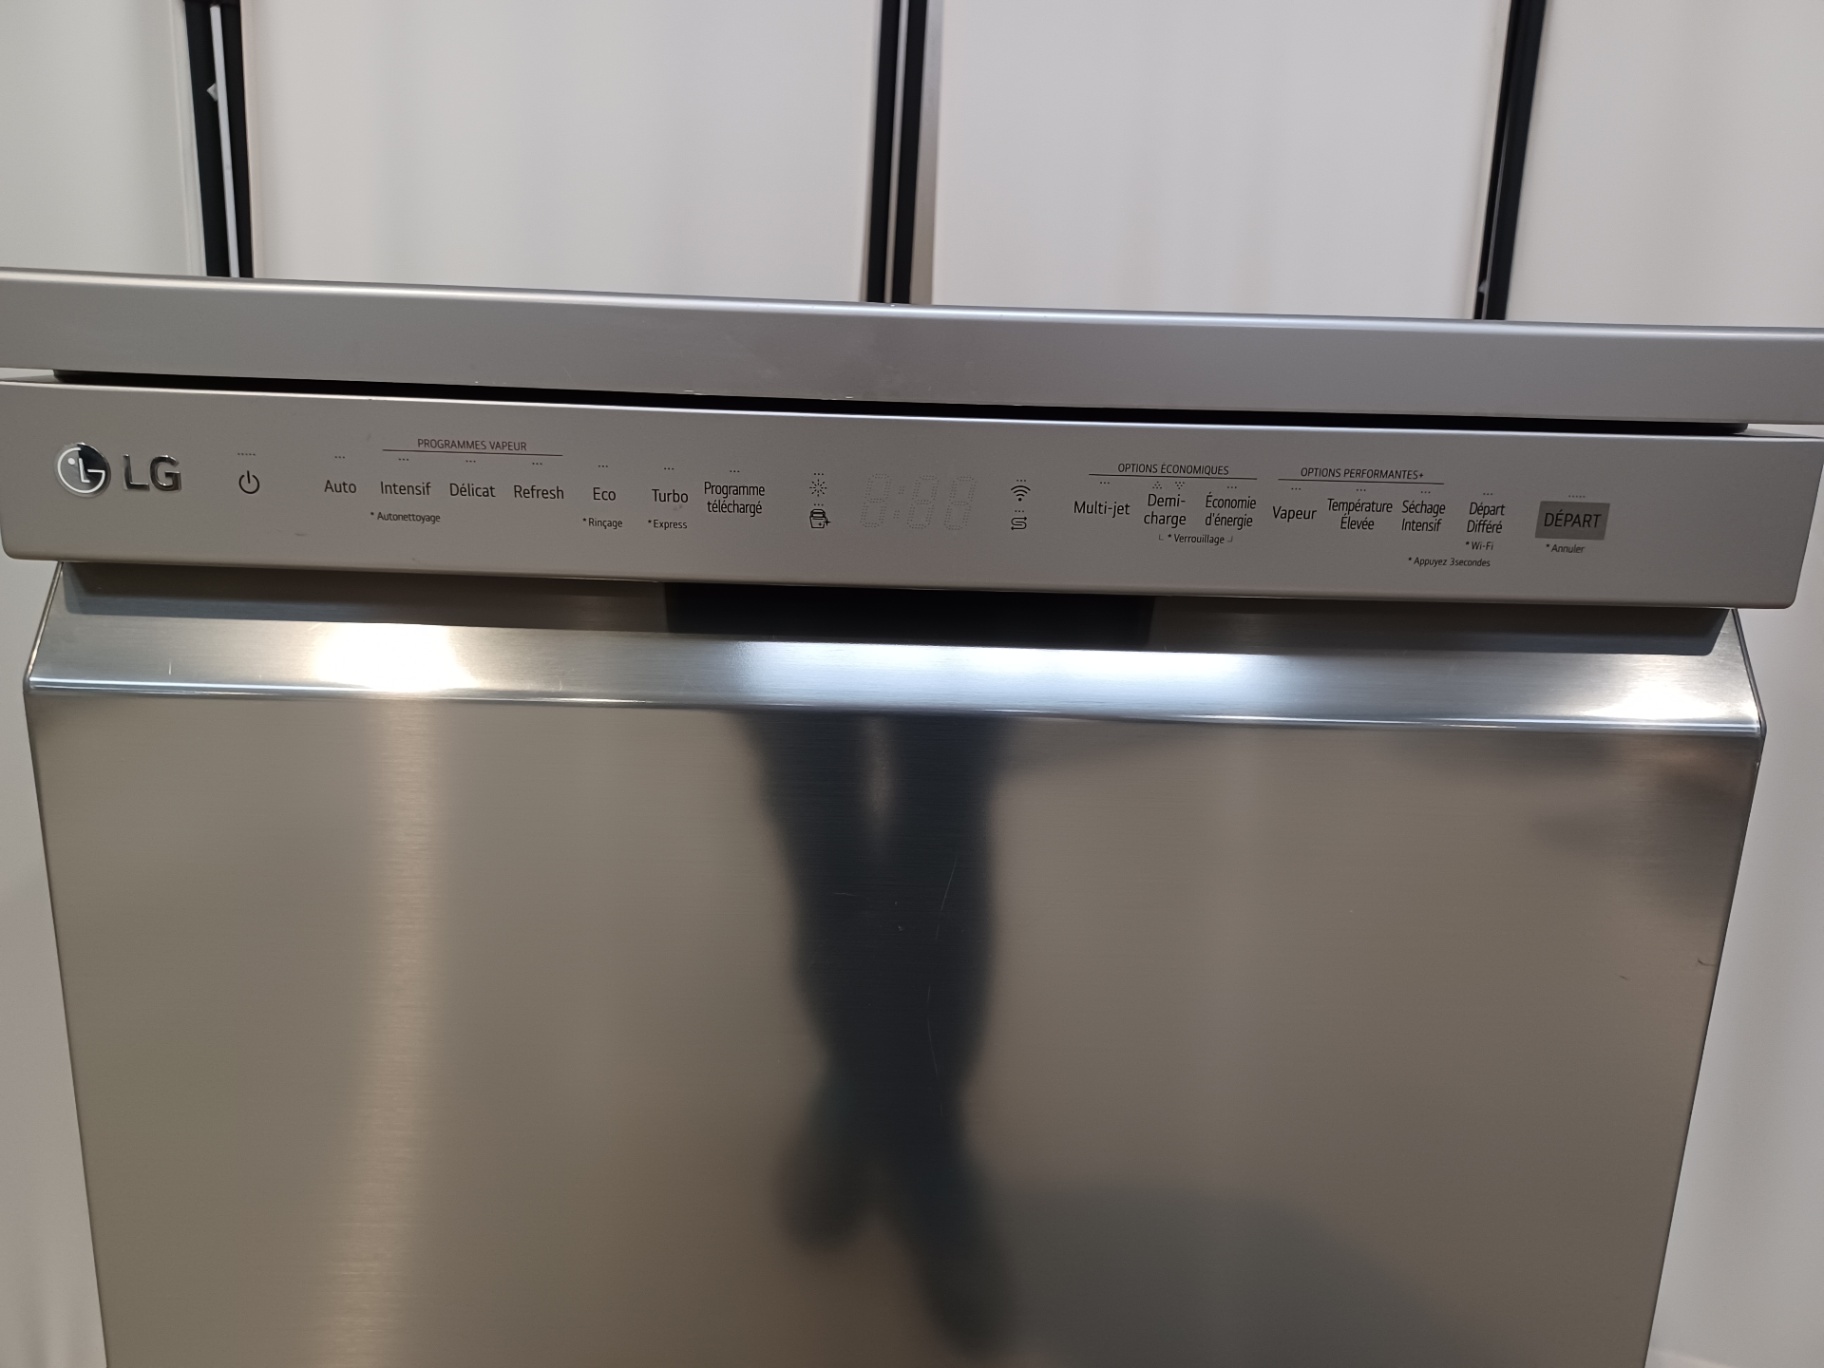 Lave-vaisselle LG DF365FPS : : Gros électroménager